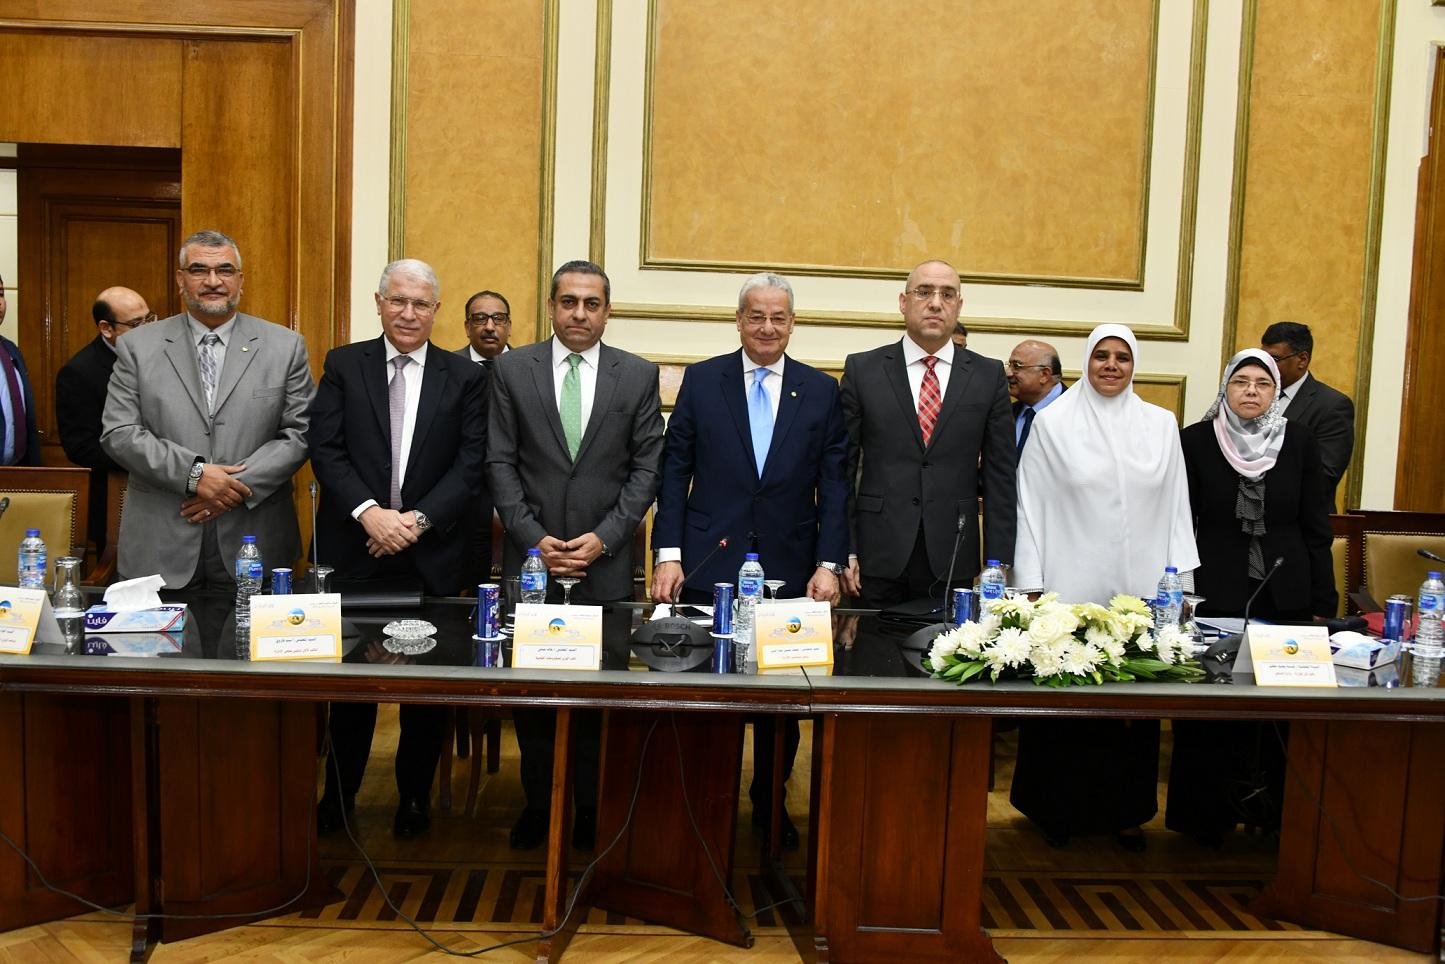   الجمعية العمومية للمقاولون العرب تعتمد القوائم المالية والحسابات الختامية لعام 2017/2018 ومشروع الموازنة لـ2019/2020